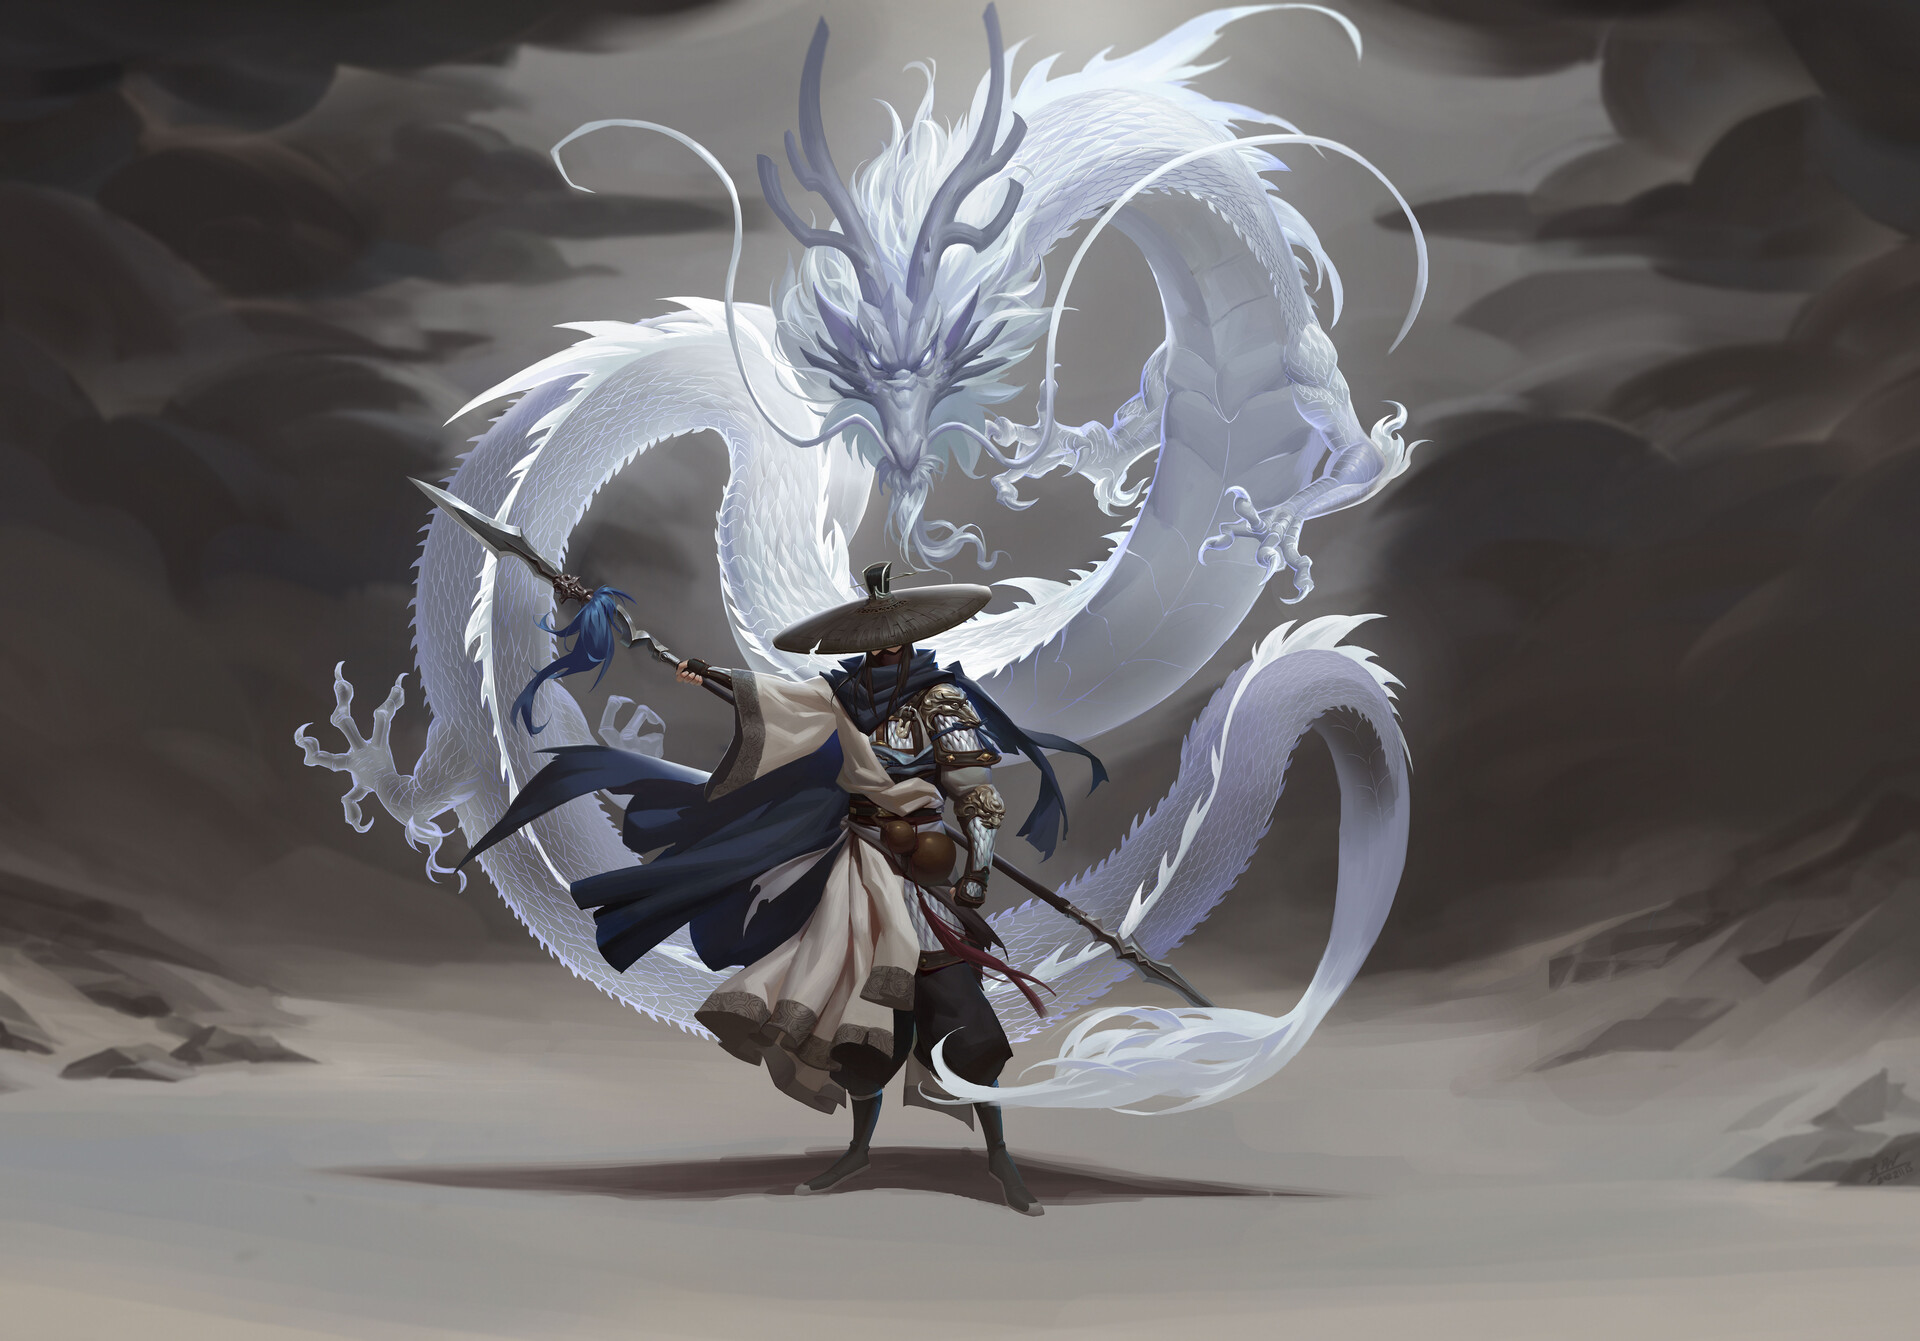 Dragon warrior by Yuchao Wang